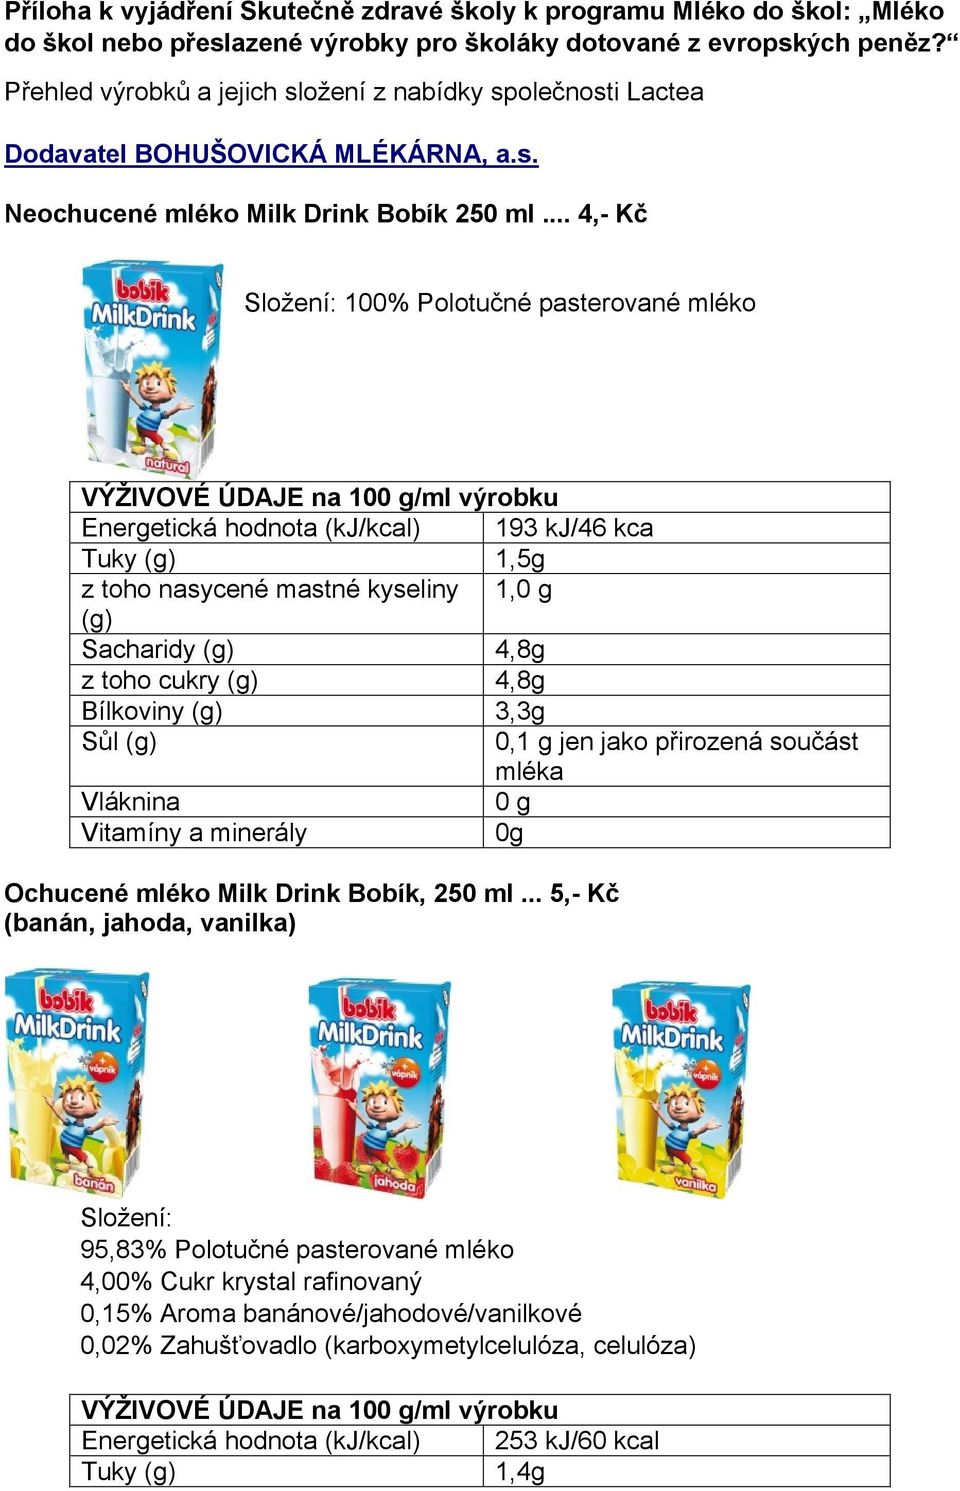 .. 4,- Kč 100% Polotučné pasterované mléko VÝŽIVOVÉ ÚDAJE na 10/ml výrobku Energetická hodnota (kj/kcal) 193 kj/46 kca Tuky 1,5g z toho nasycené mastné kyseliny 1, Sacharidy 4,8g z toho cukry 4,8g